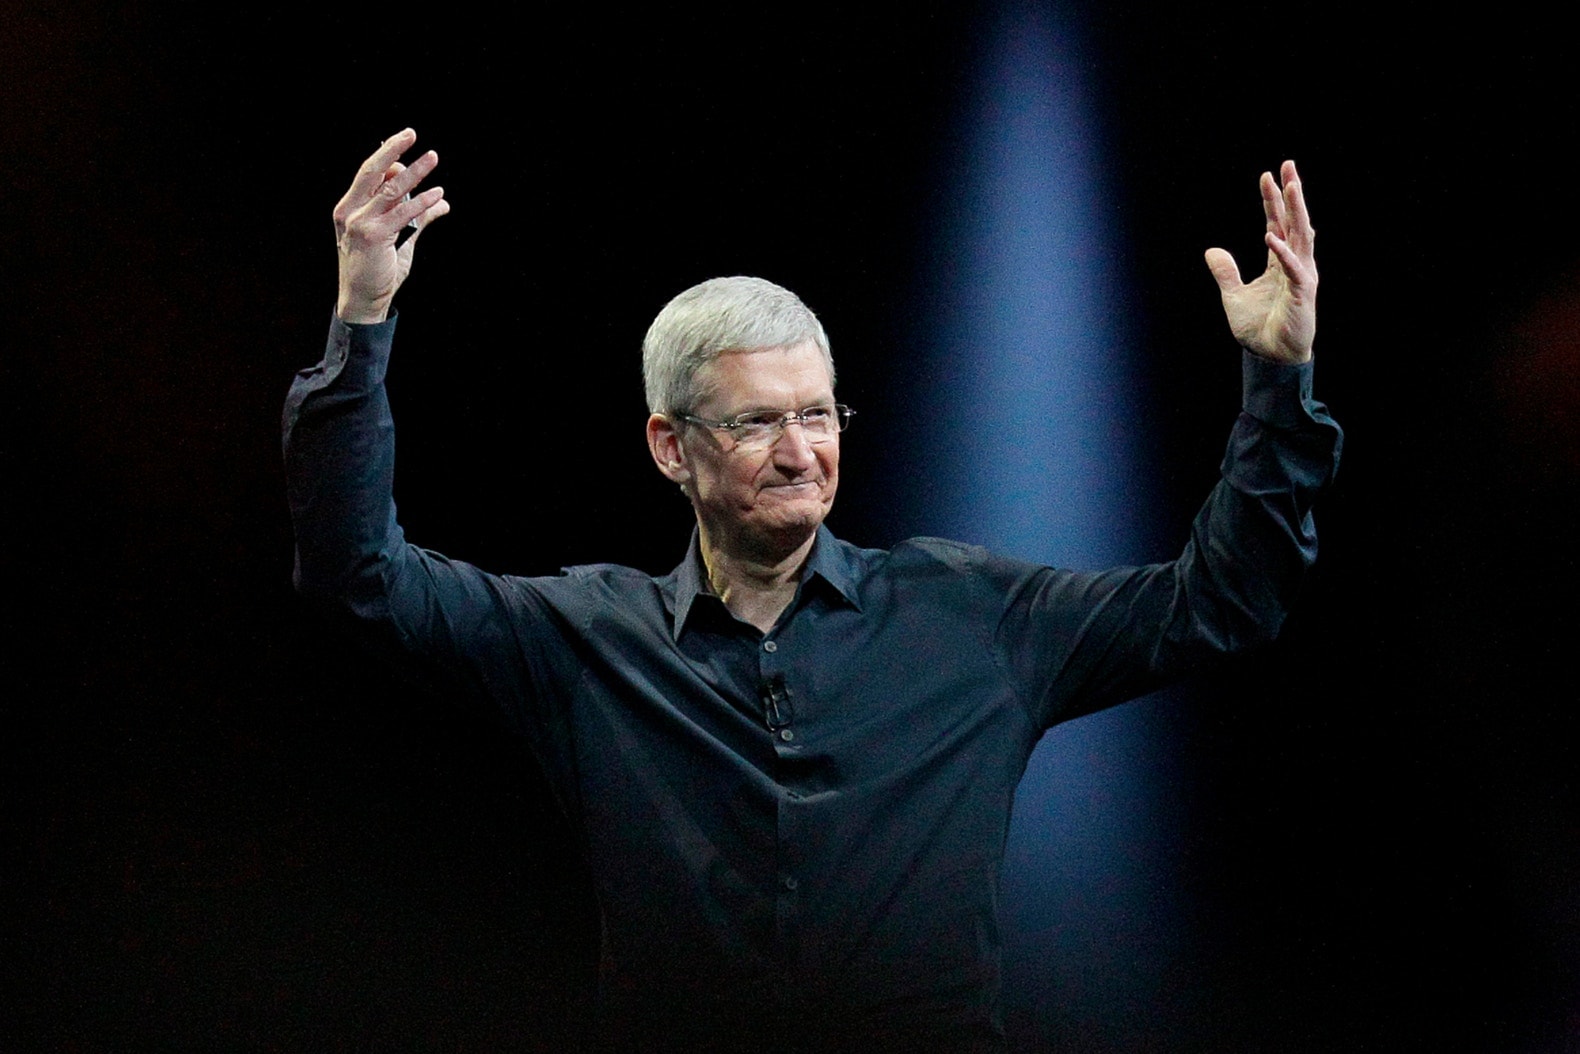 Apple iPhone X 讓 Tim Cook 在一周內淨賺 $3,400 萬美金！